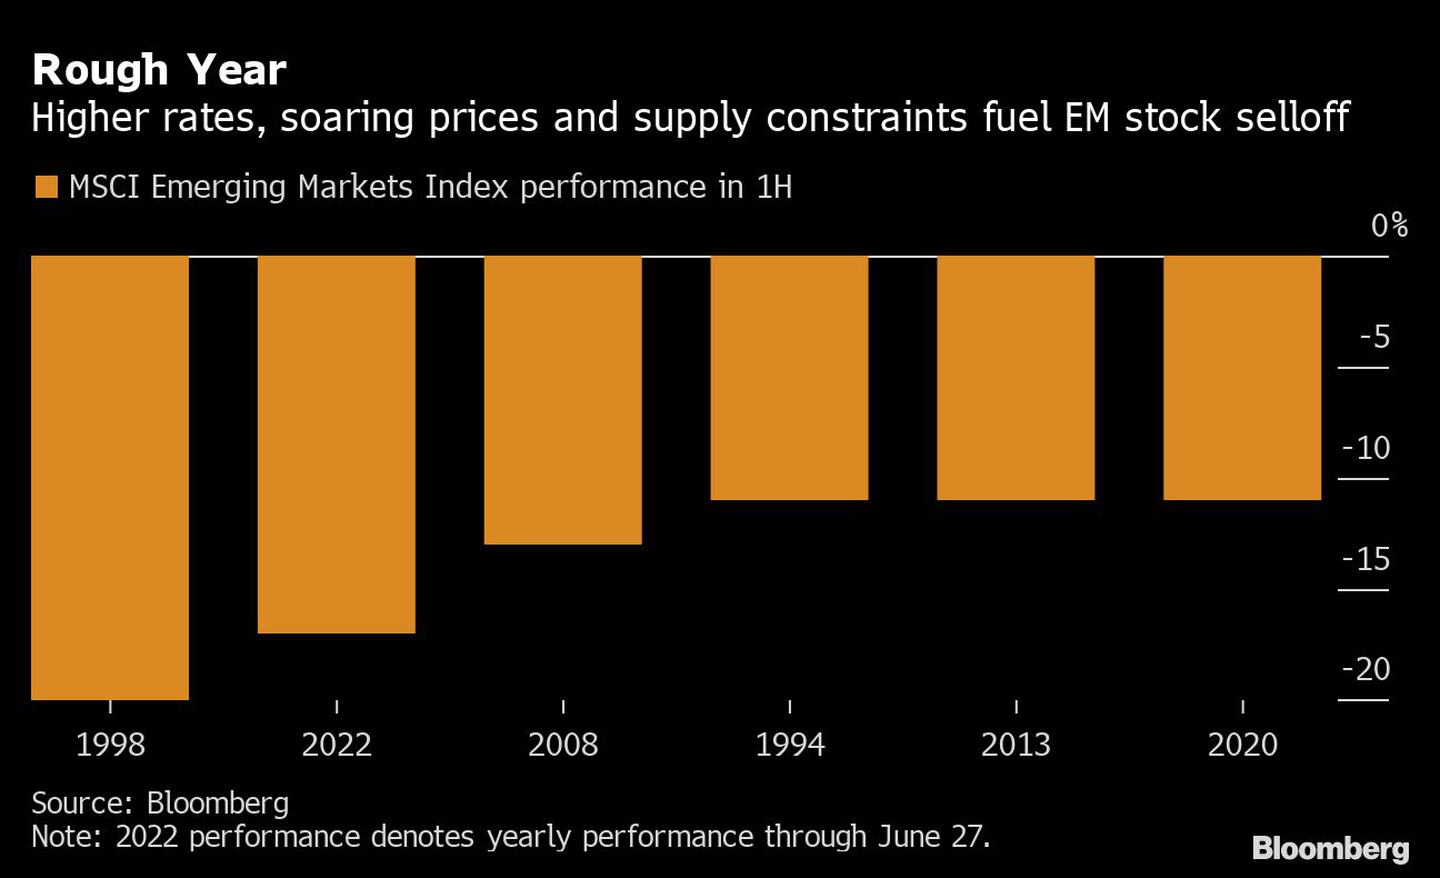 Tasas más altas, precios al alza y problemas de suministro impulsan la venta de acciones de mercados emergentesdfd